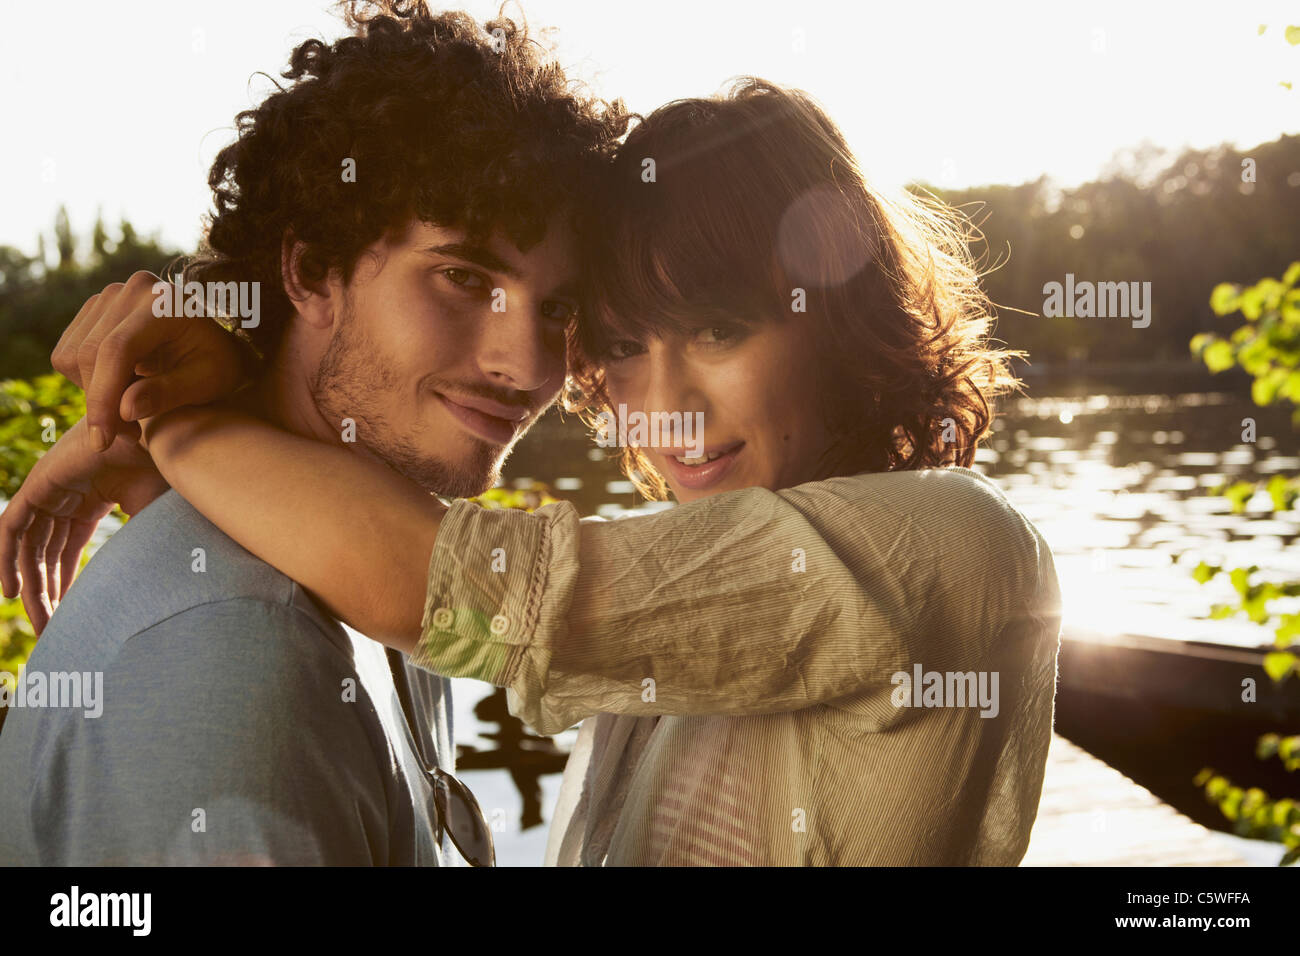 Germania Berlino giovane coppia abbracciando dal fiume Sprea, vista laterale, ritratto, close-up Foto Stock